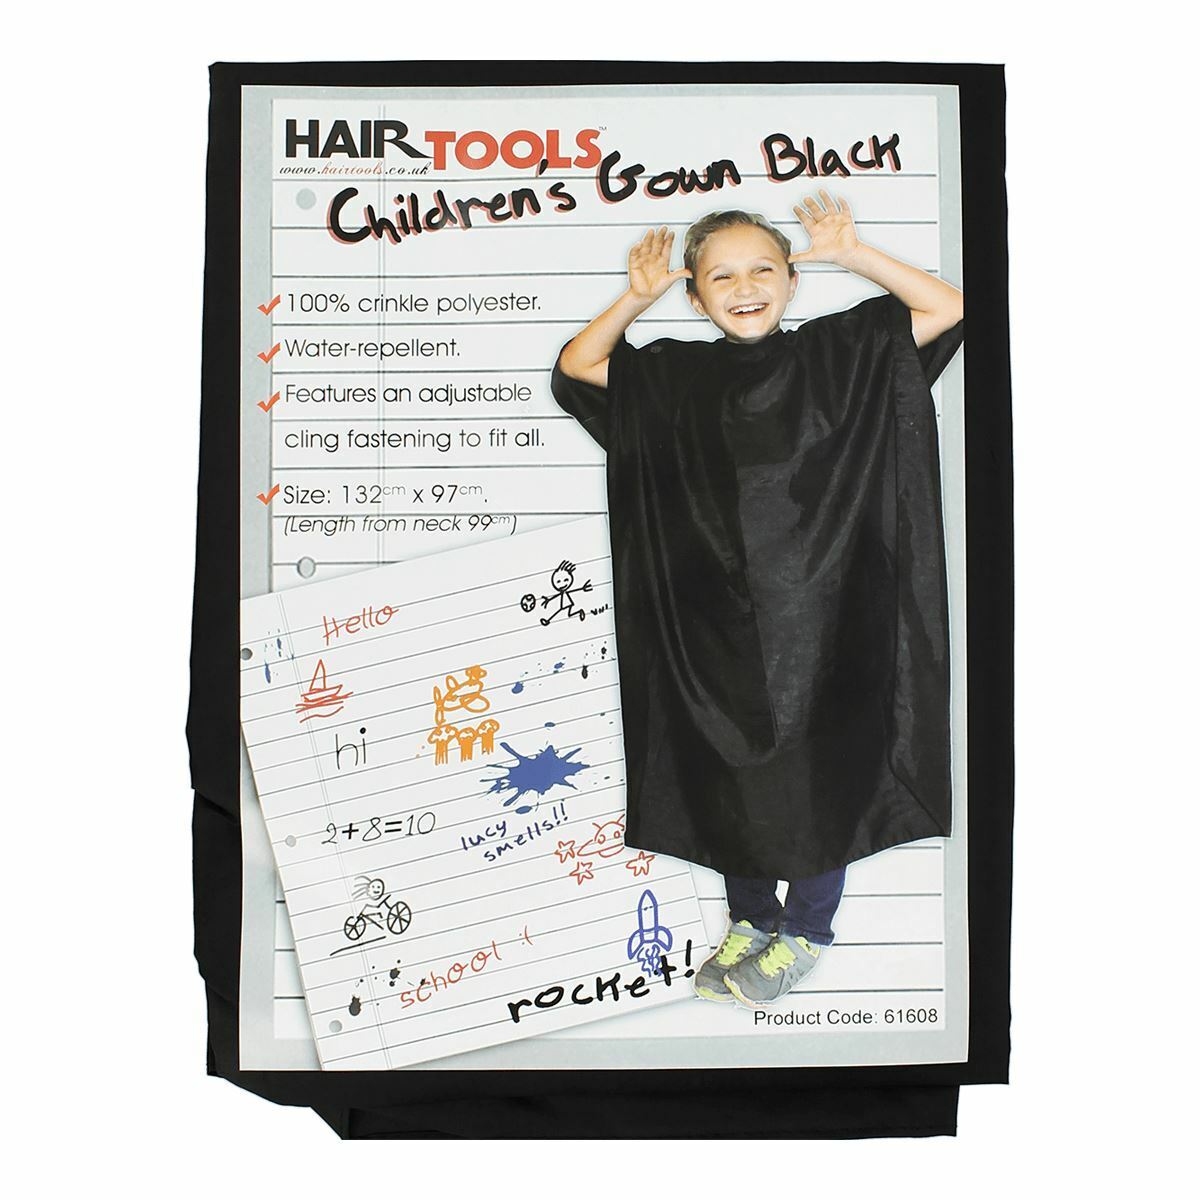 Hairtools Children's Gown Black